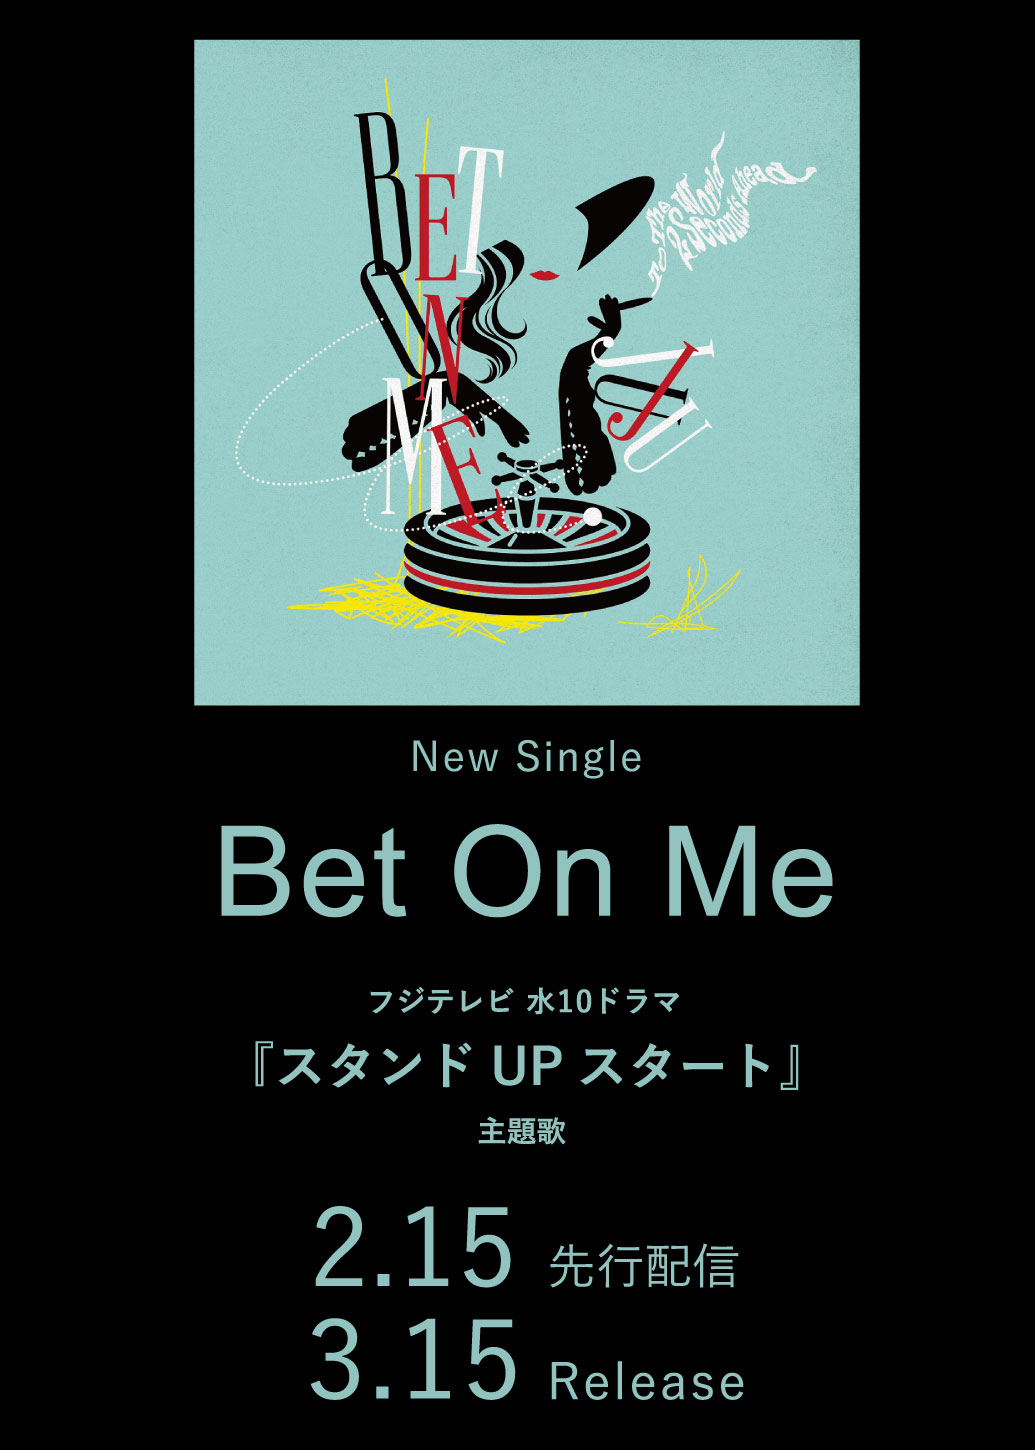 New Single「Bet On Me」フジテレビ 水10ドラマ『スタンドUPスタート』主題歌 2.15 先行配信 3.15 Release